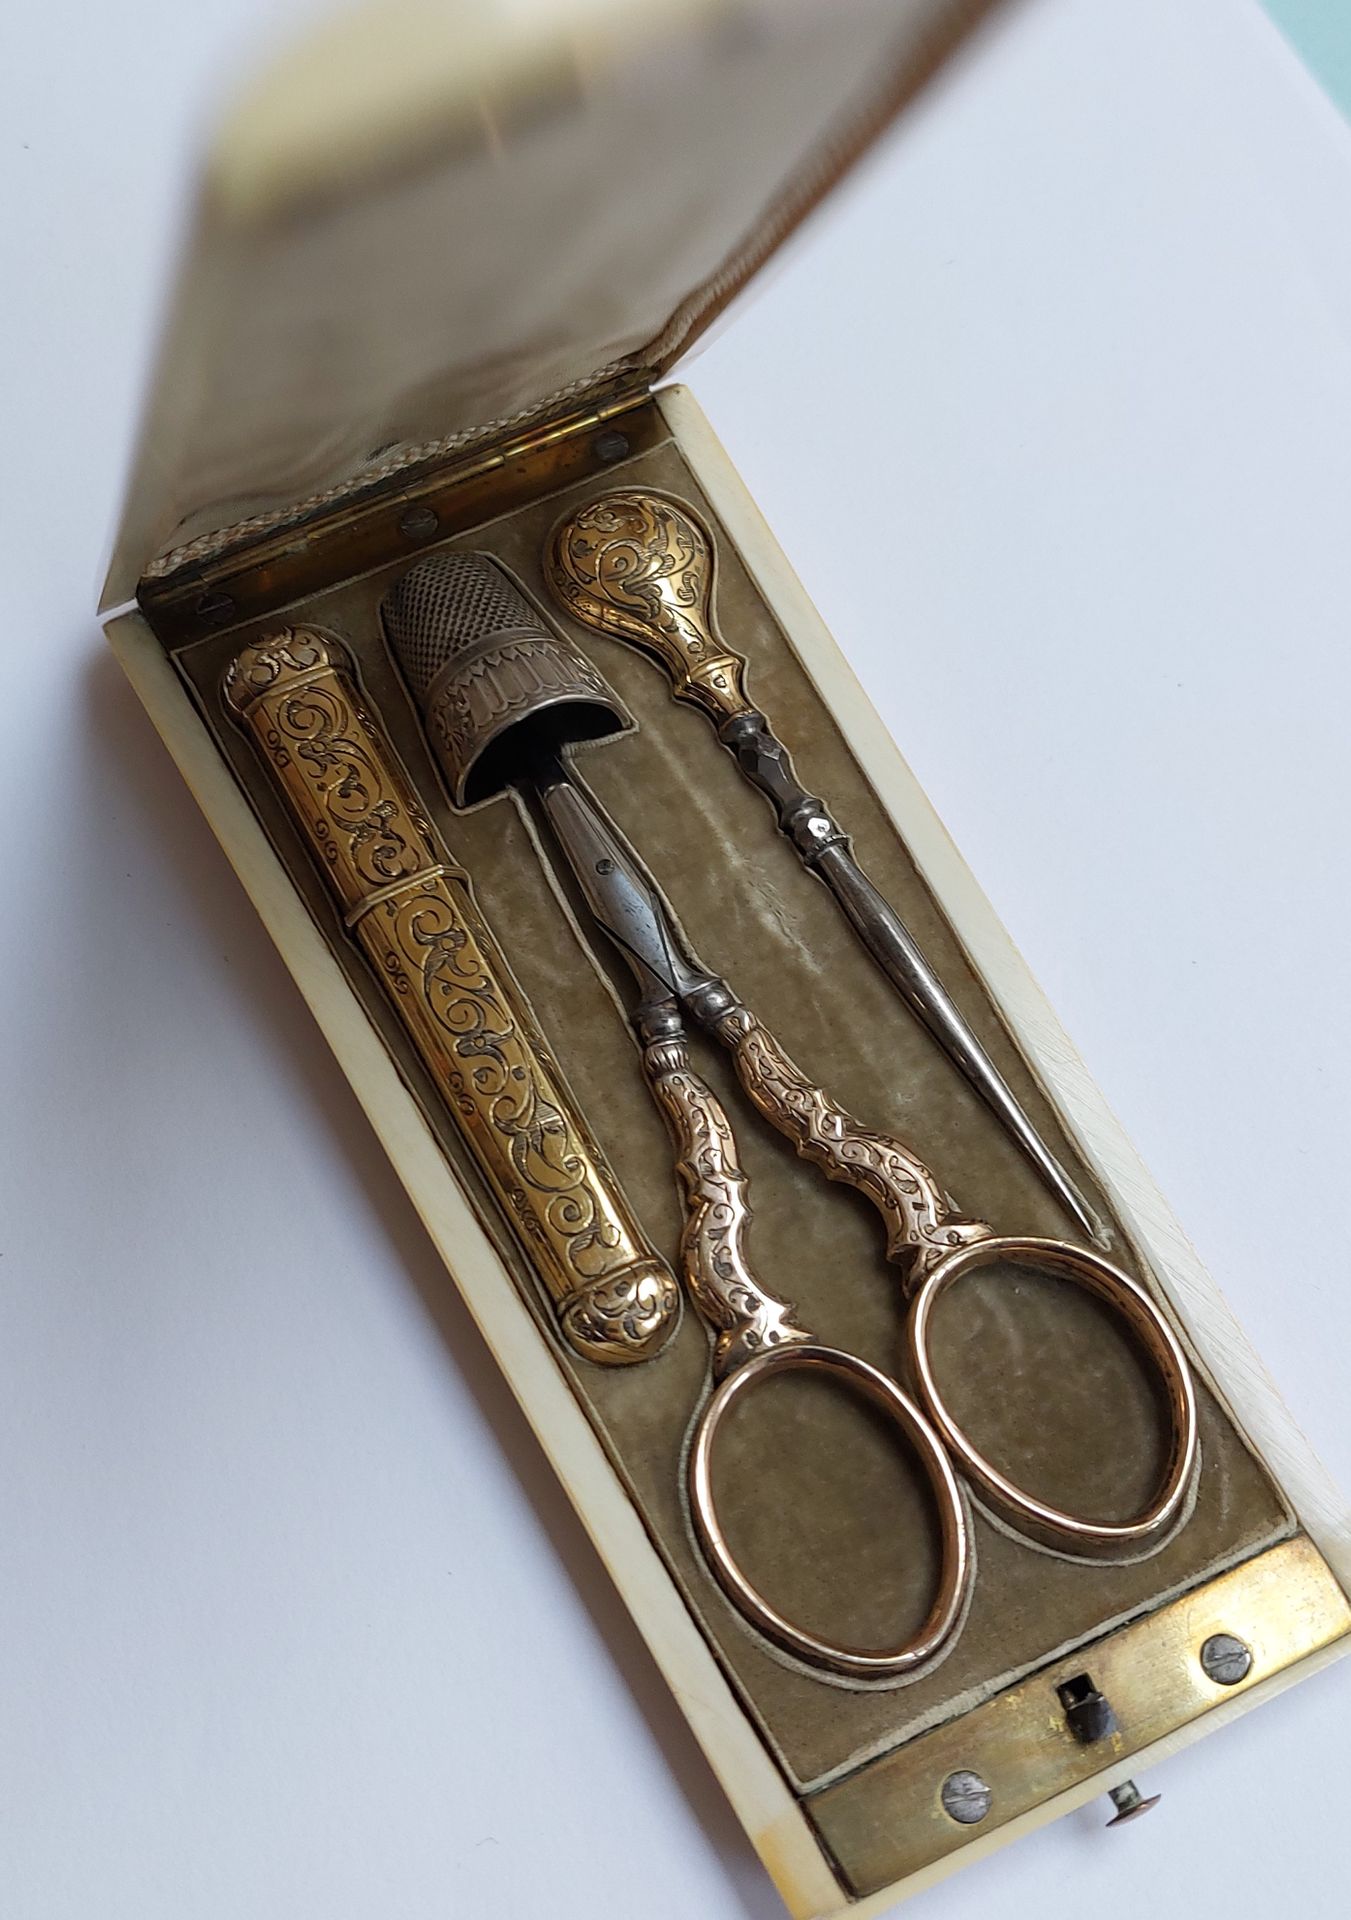 Null 鎏金和钢制的服装用品，包括一个针盒，一把剪刀和一个花边针，刻有叶子，放在一个象牙盒子里，19世纪末的作品。

毛重29克